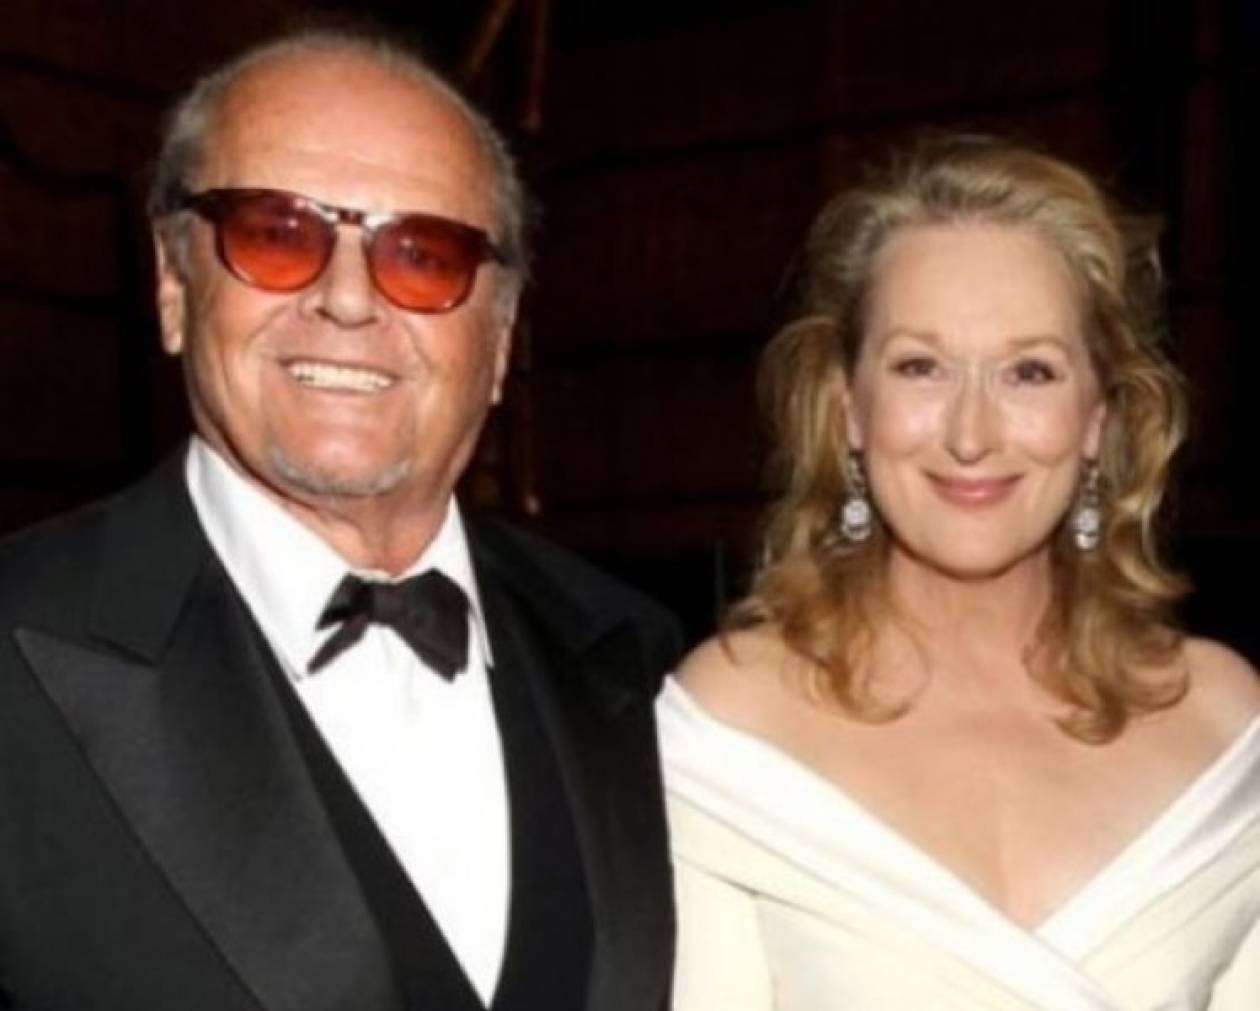 Σκάνδαλο:Ούτε η παντρεμένη Meryl Streep δεν αντιστάθηκε στον Nicholson